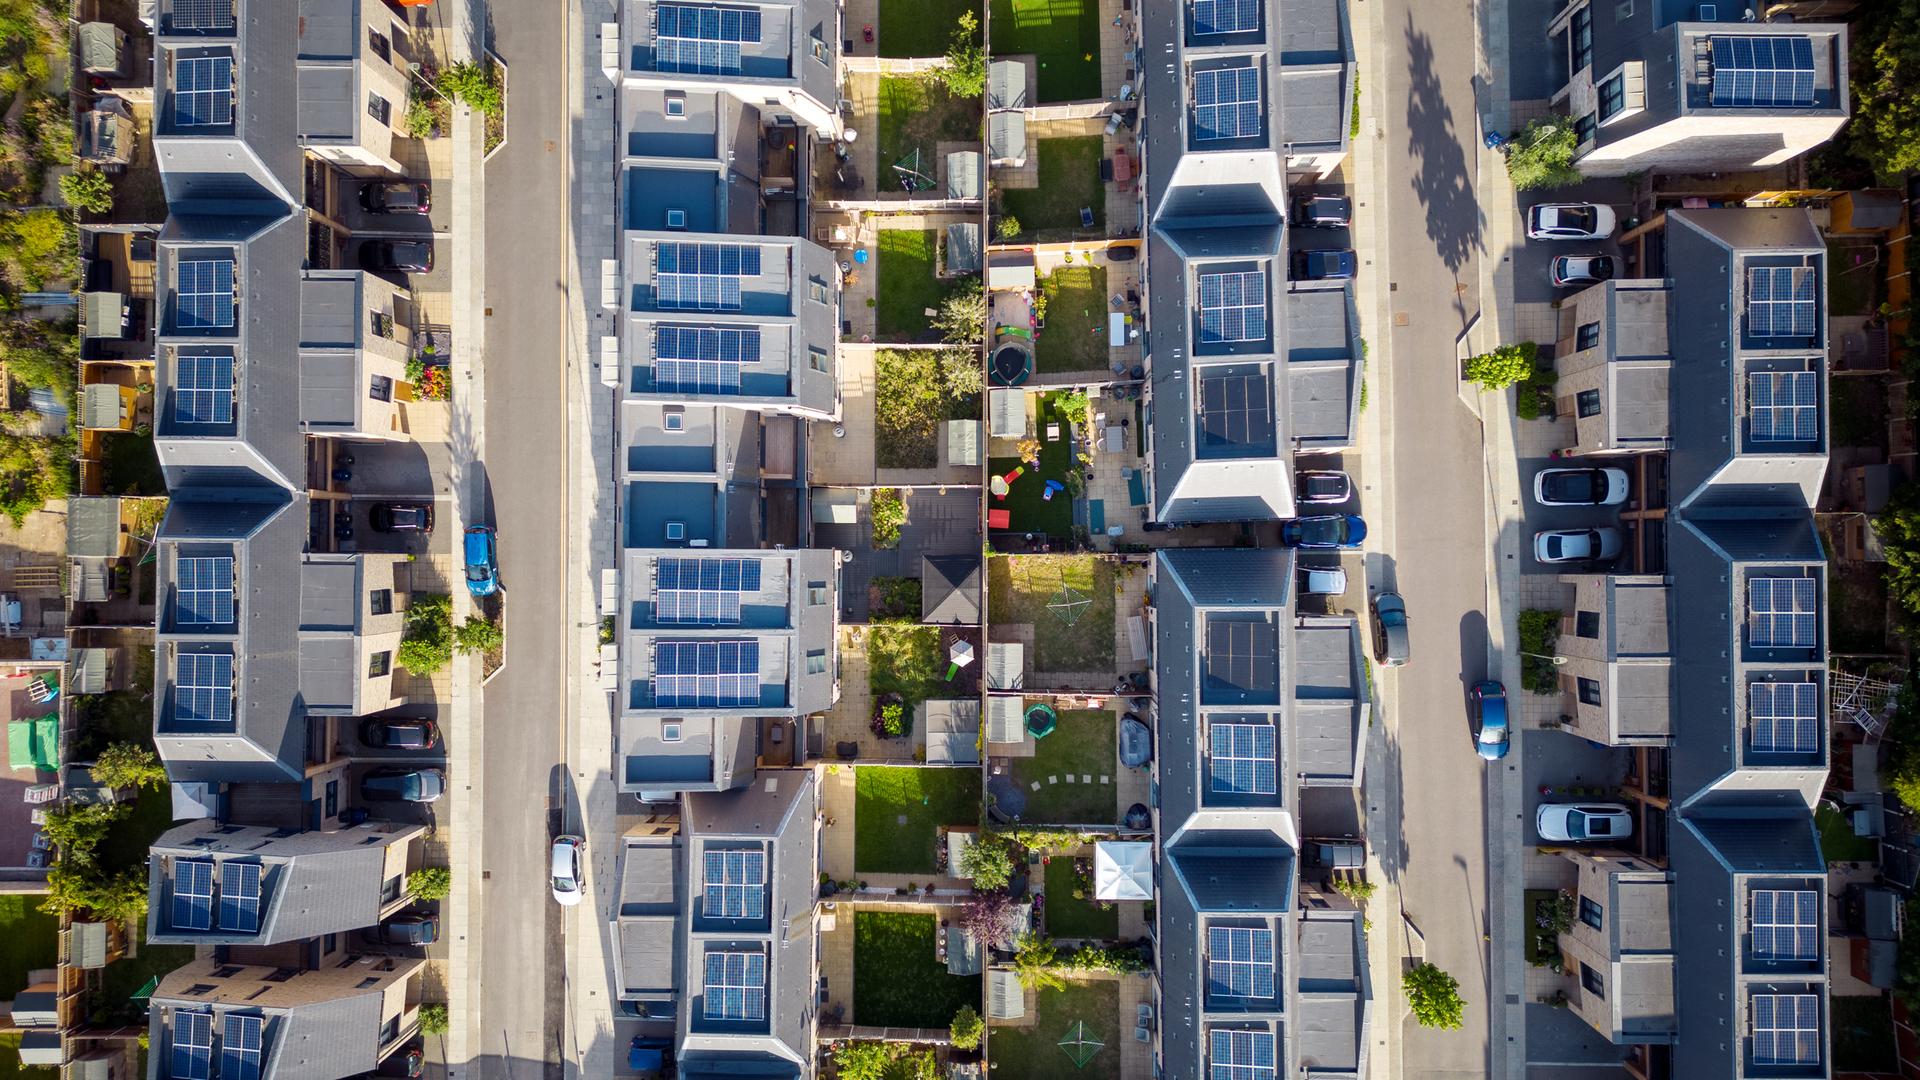 Luftansicht eines modernen Wohnblocks mit Solaranlagen auf den Dächern.